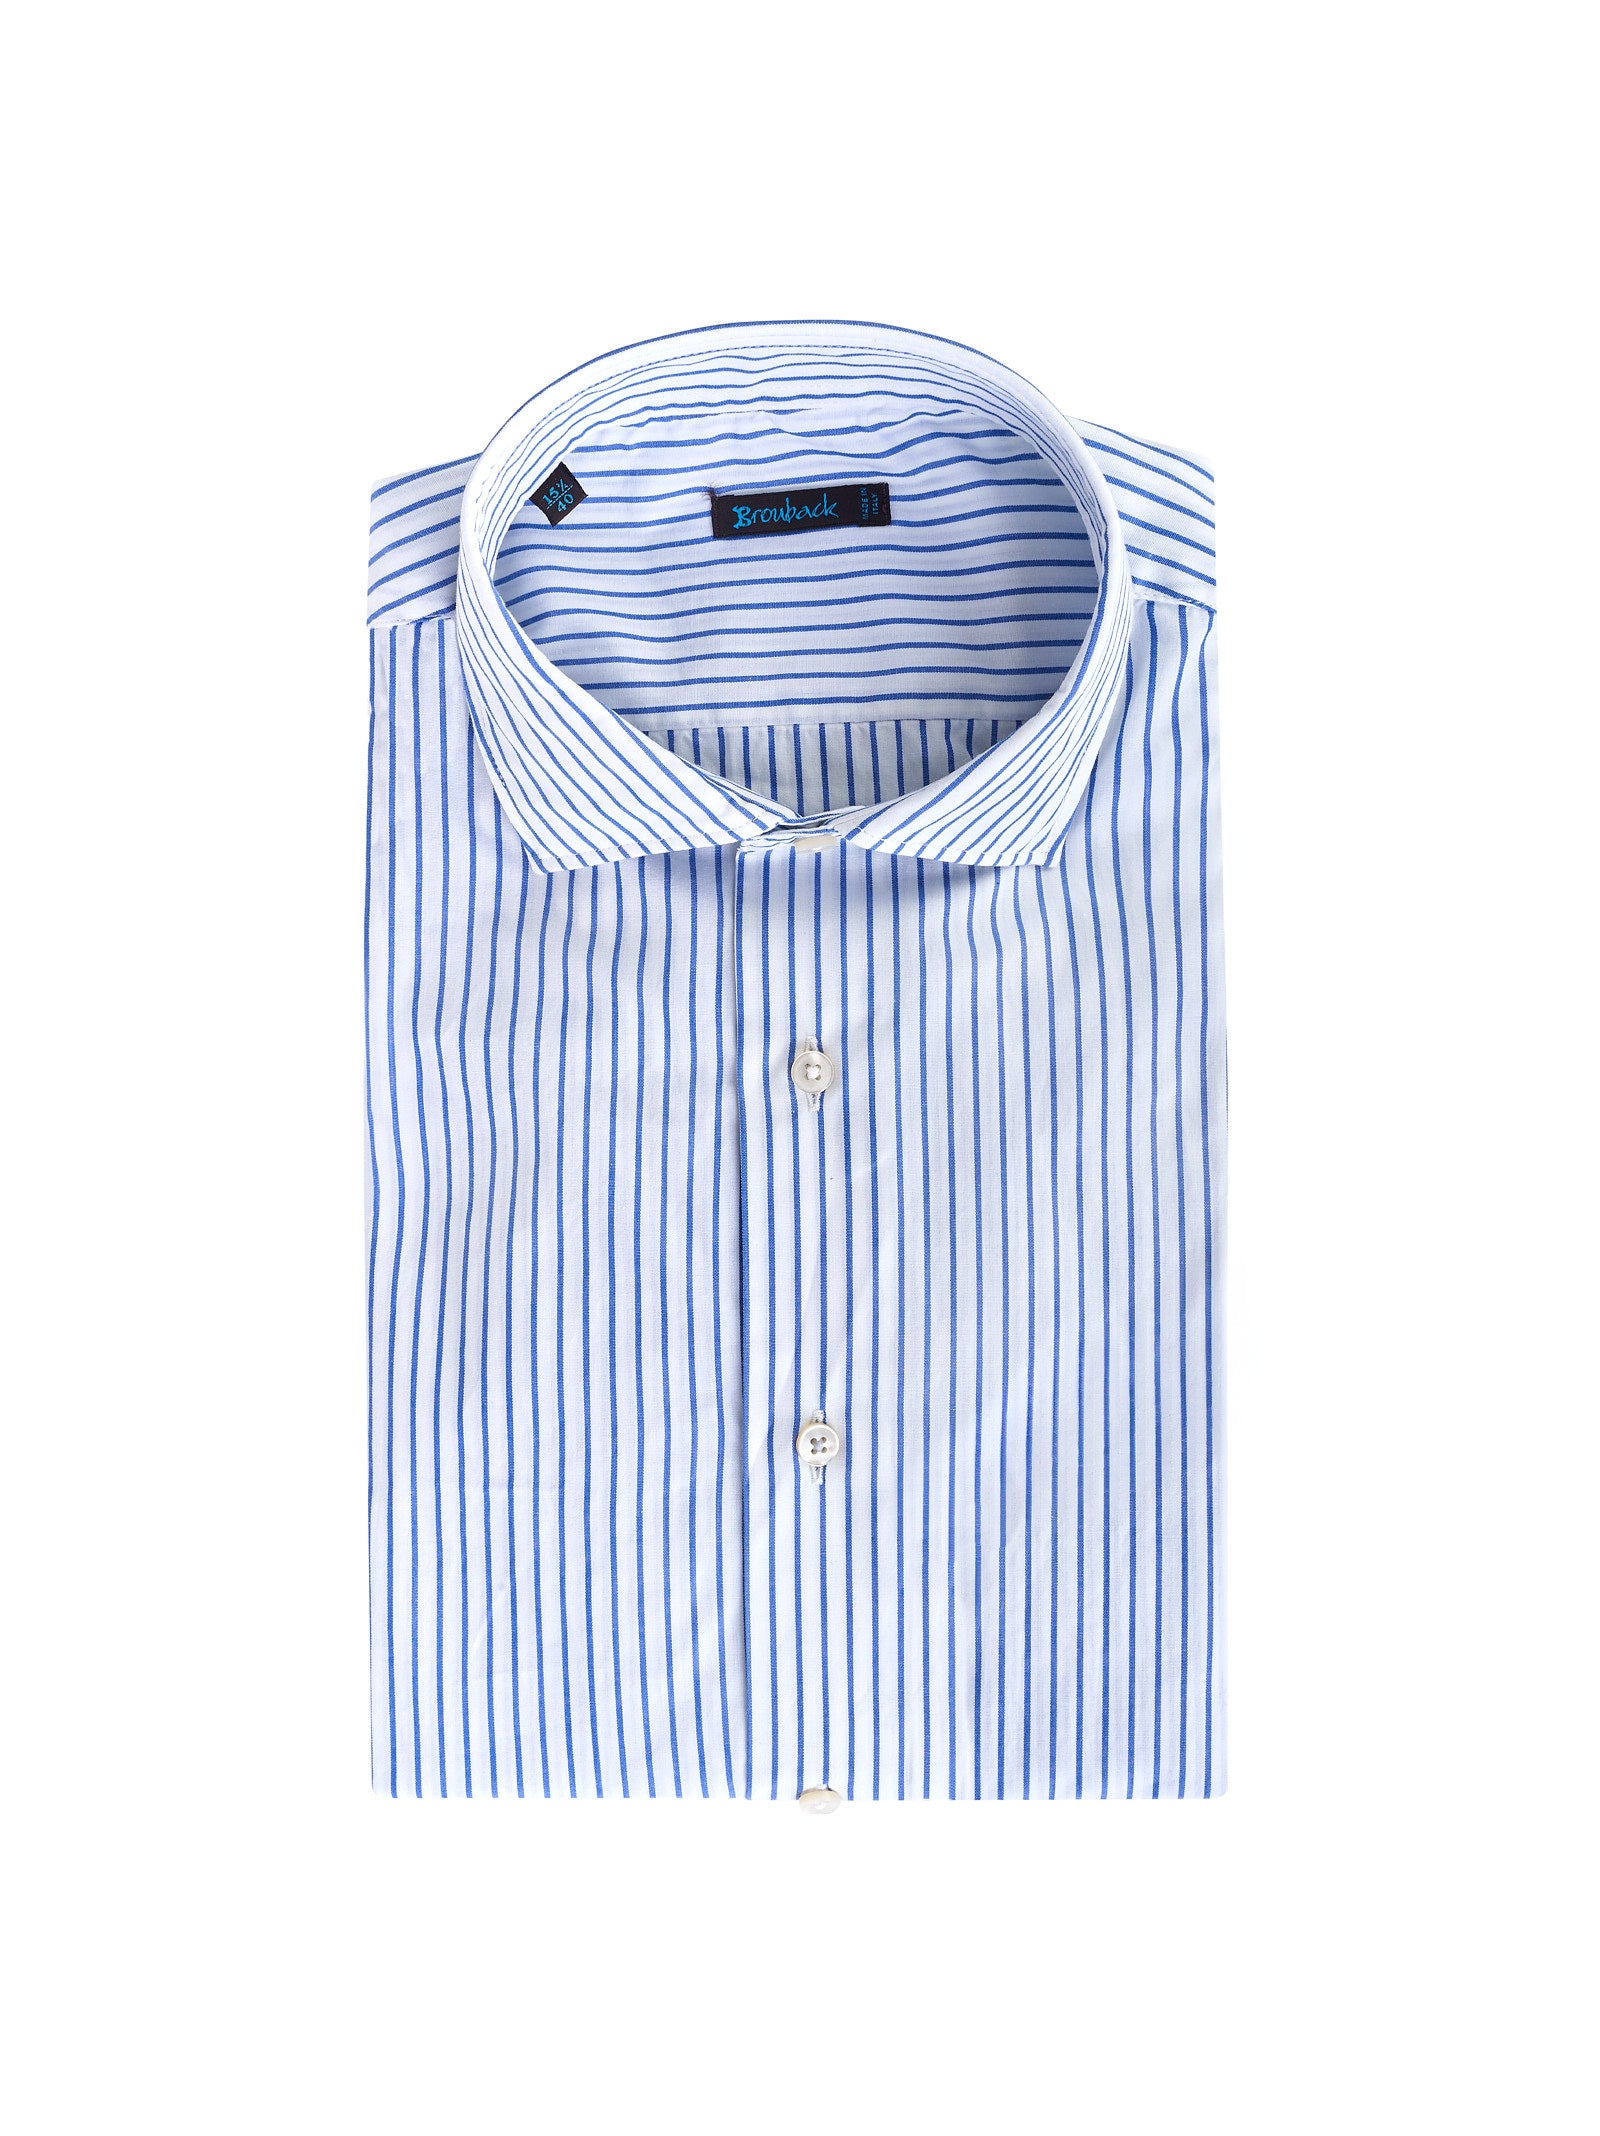 Camicia BROUBACK Righe
Bianco/azzurro